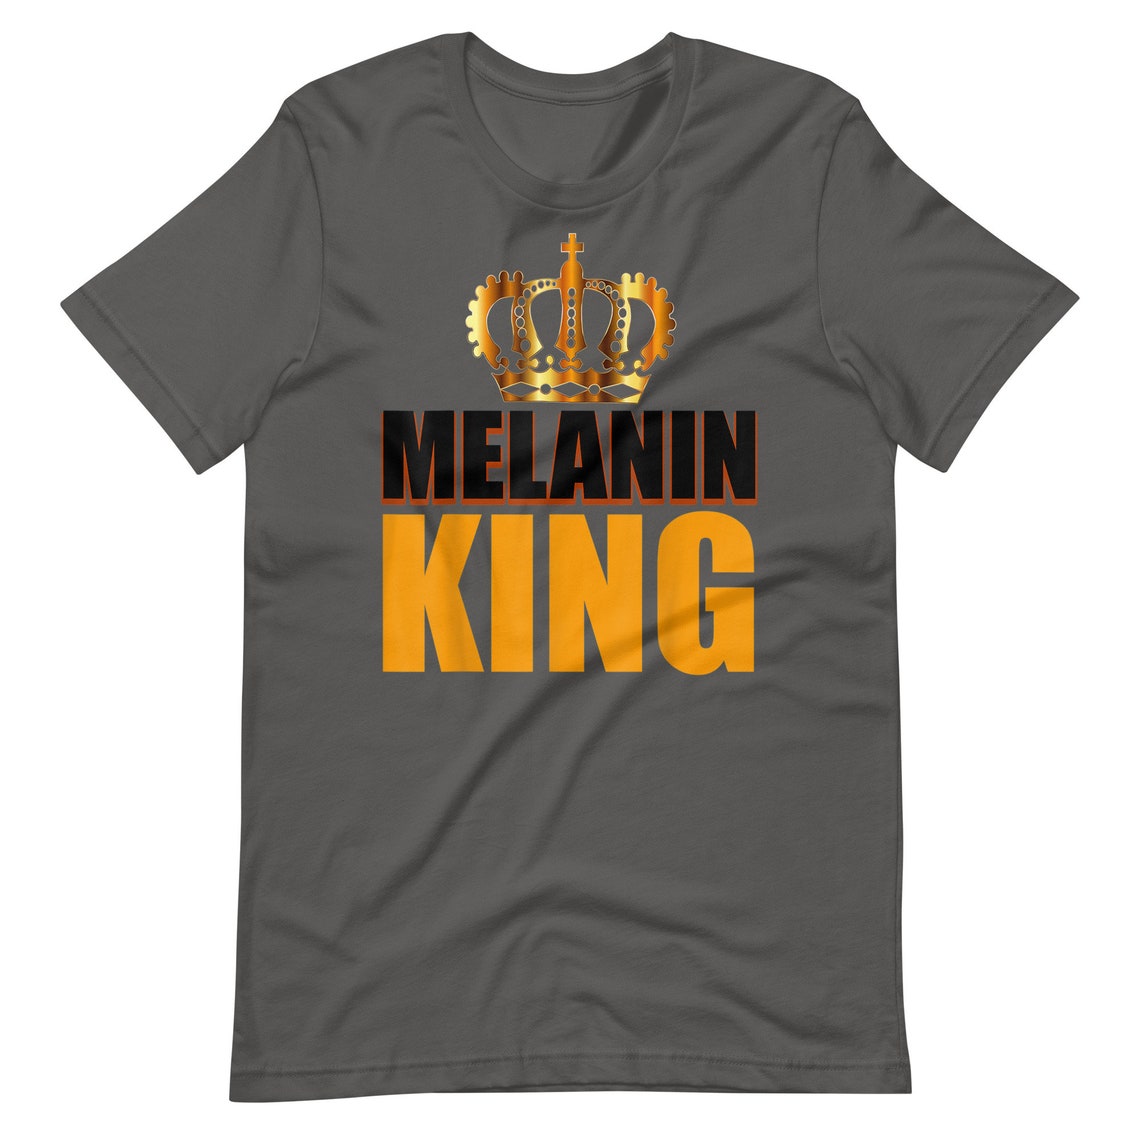 This Melanin King